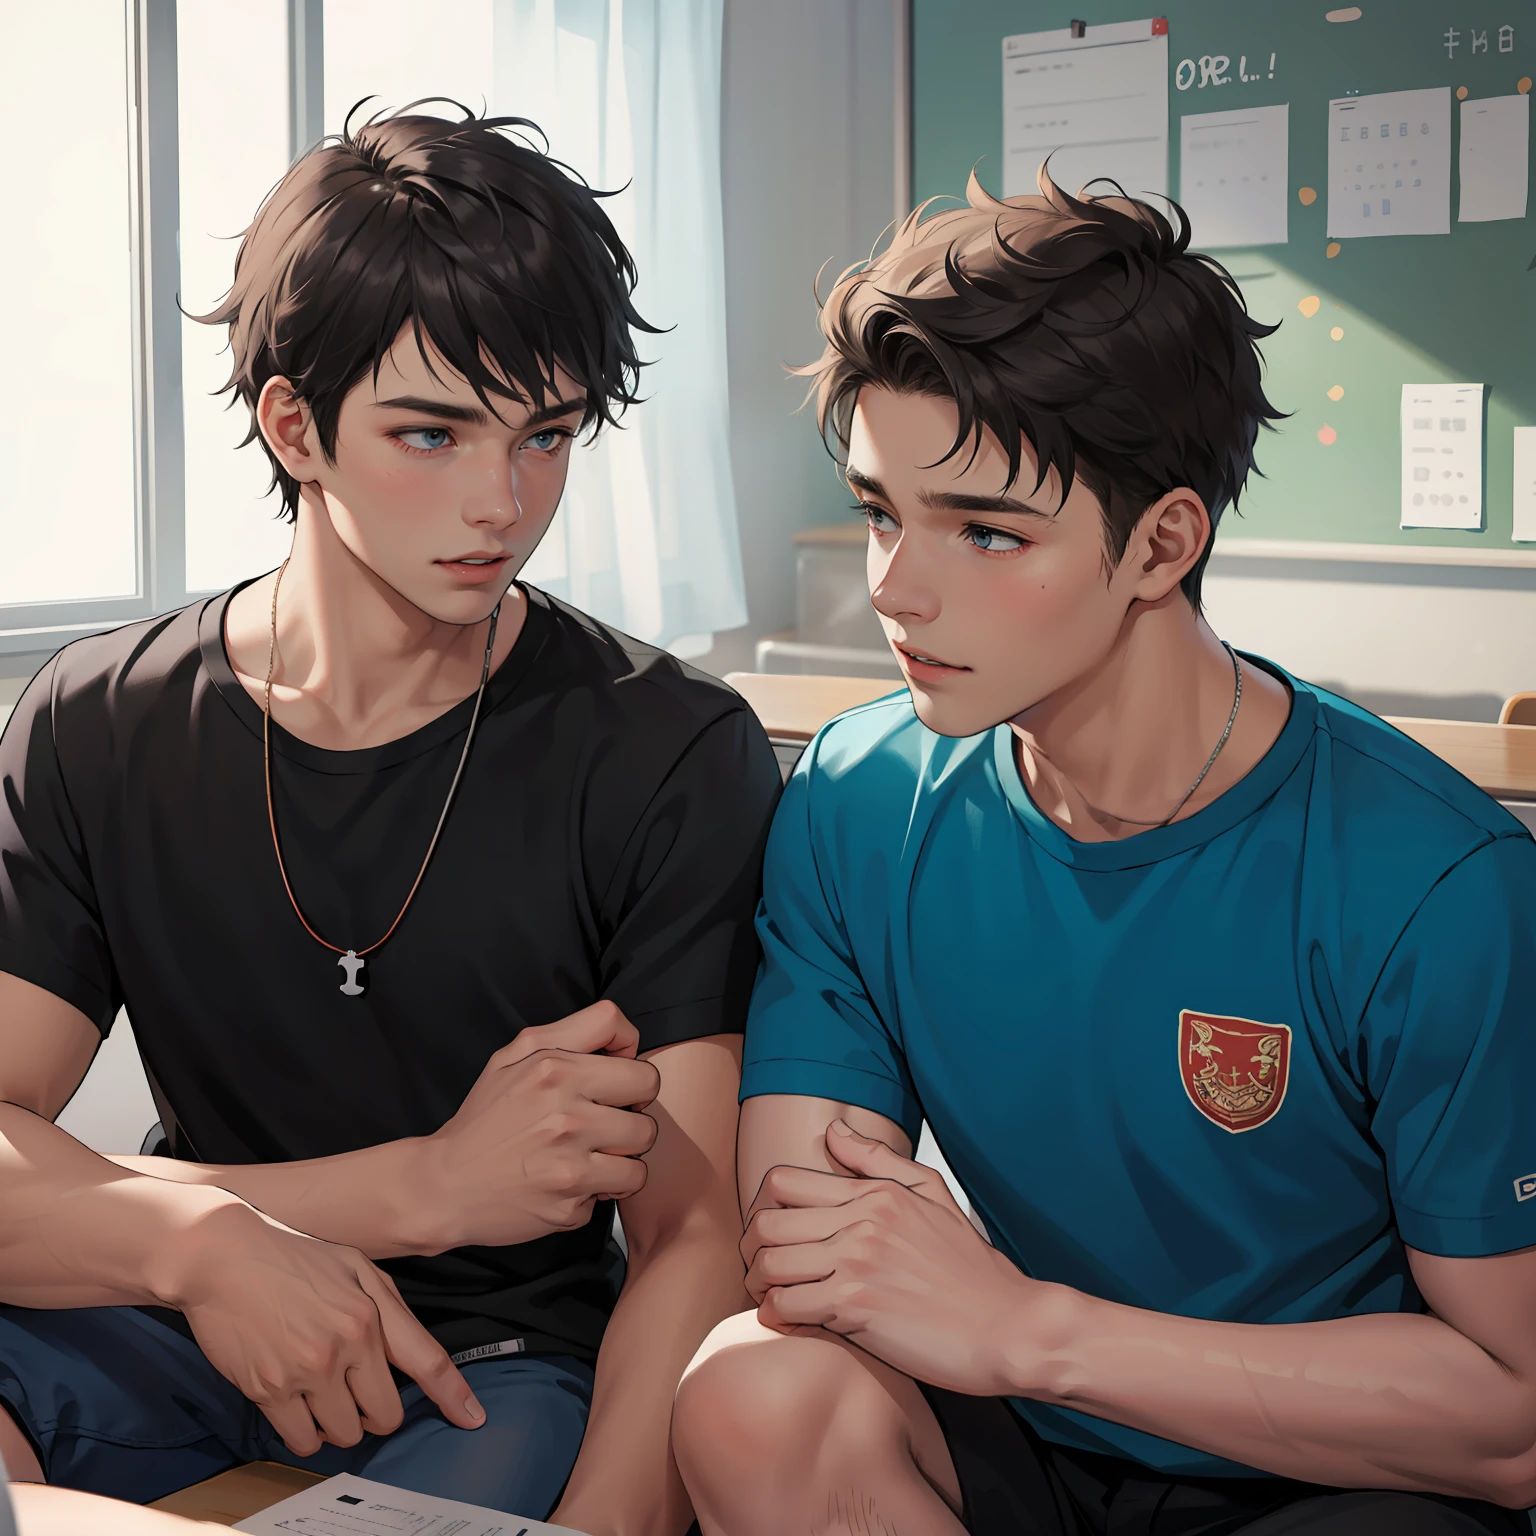 Dos amigos adolescentes de 15 años charlando en la escuela comparten un secreto de que son casi amigos como hermanos.. (usar los mismo personajes)